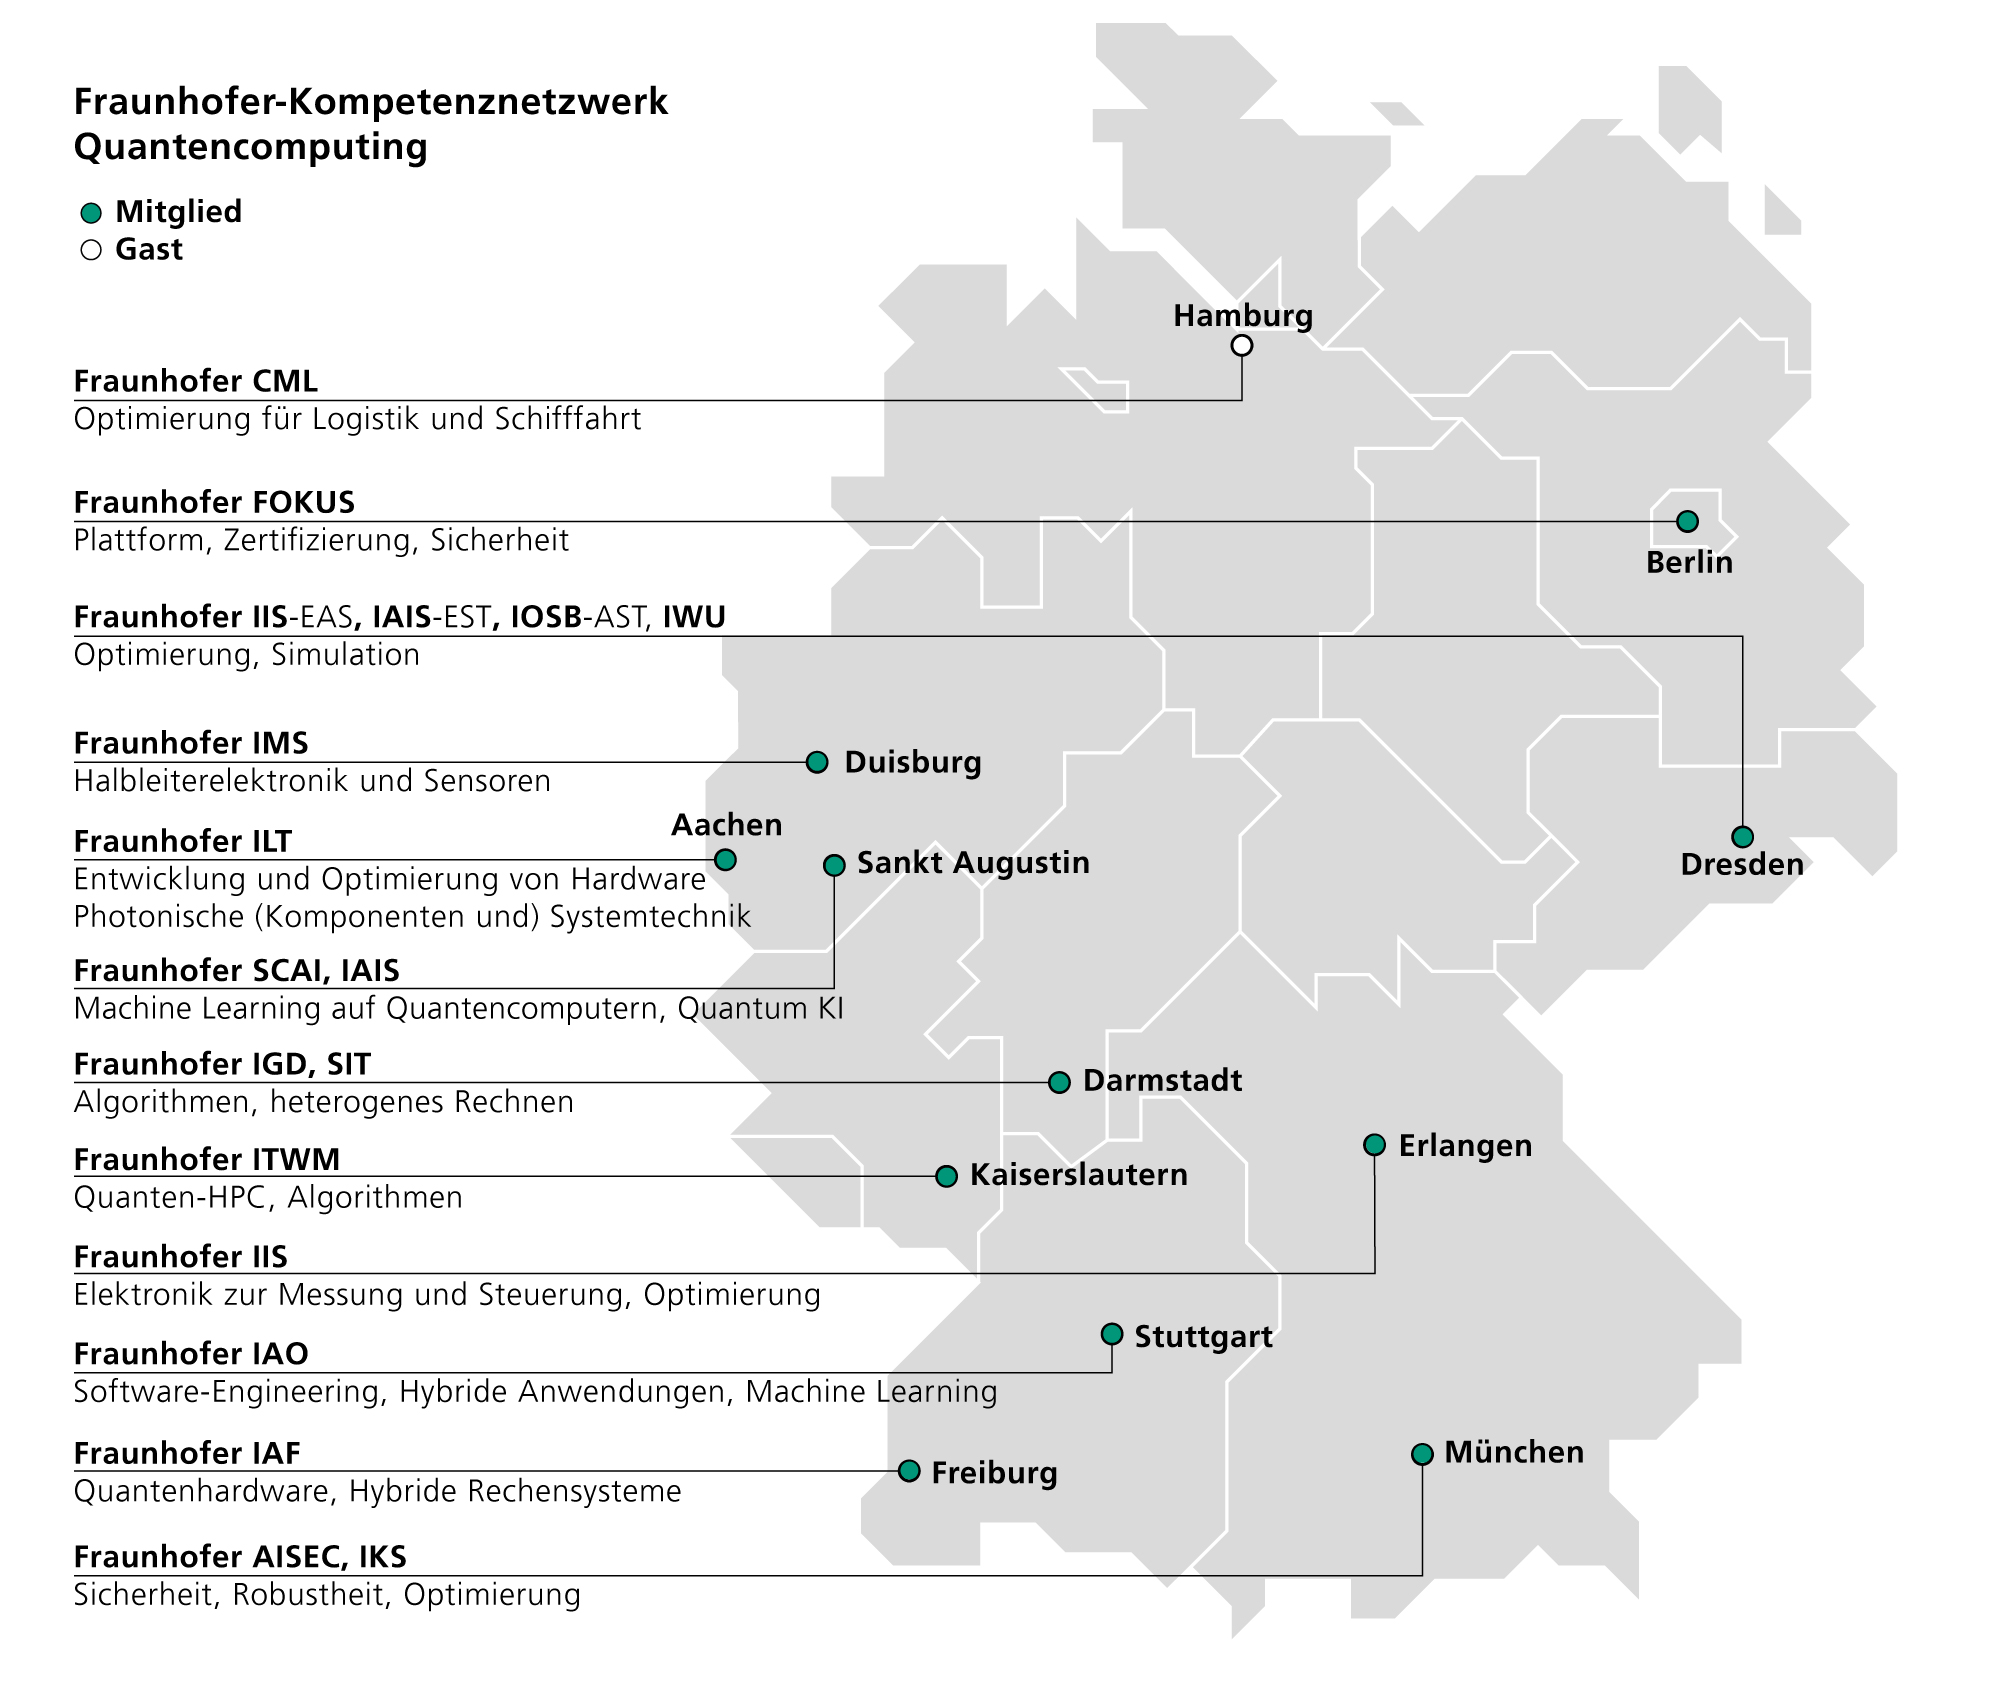 Standorte und Forschungsthemen des Fraunhofer-Kompetenznetzwerks Quantencomputing